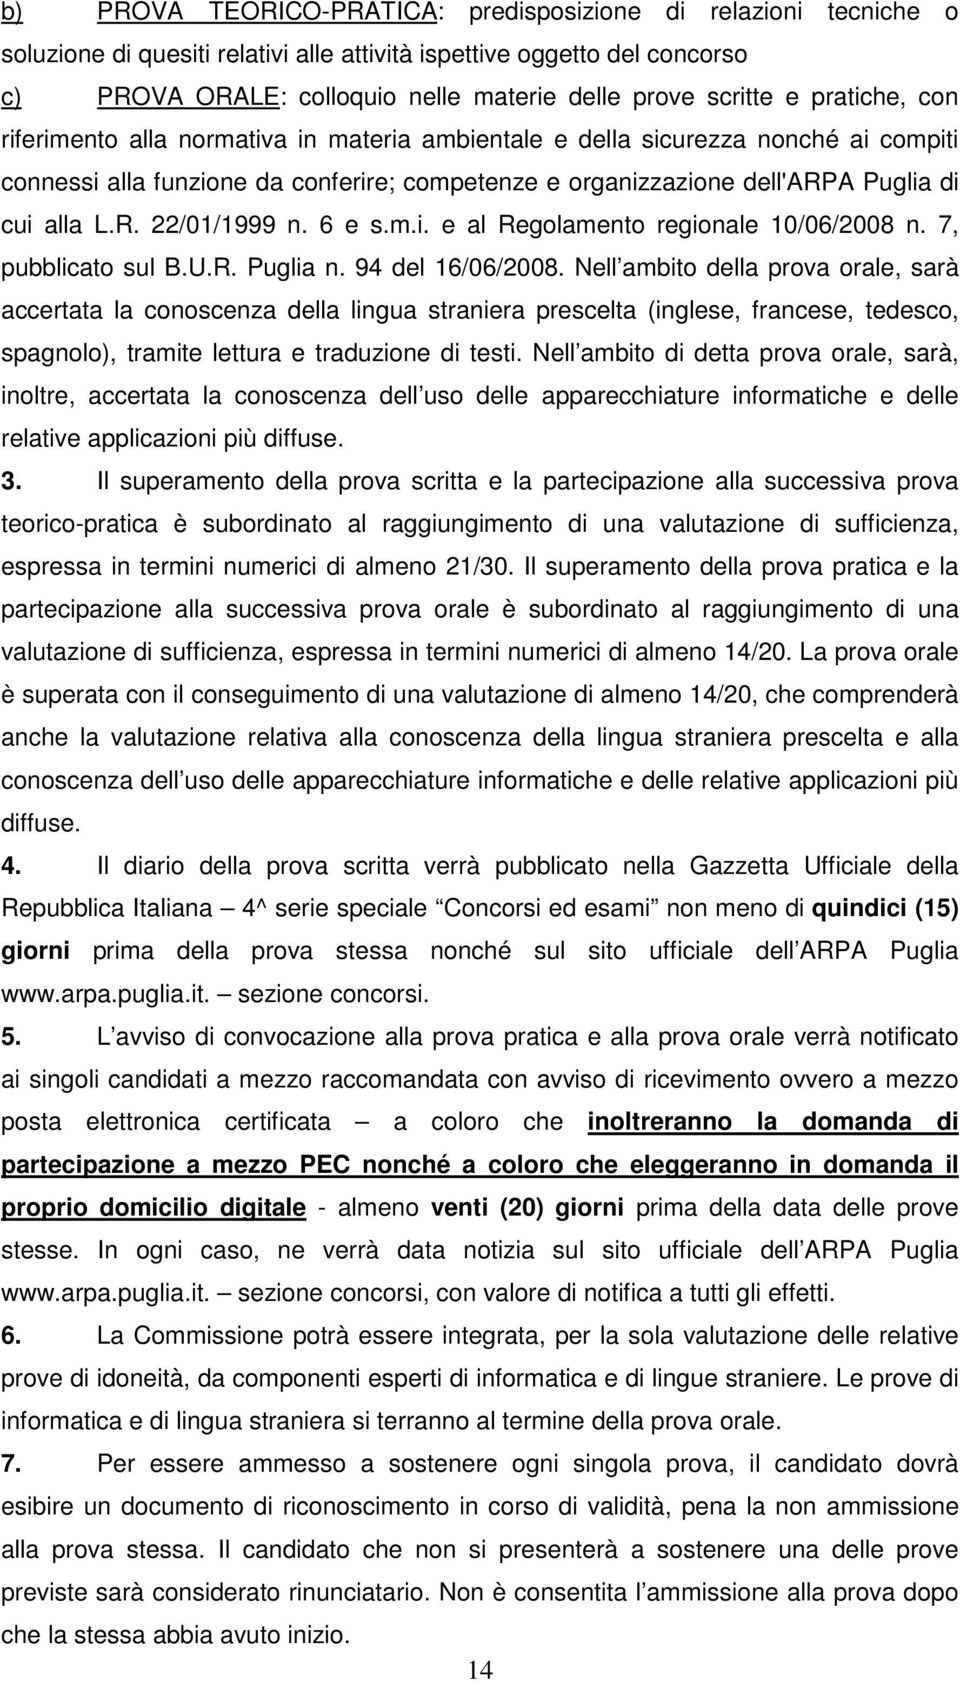 alla L.R. 22/01/1999 n. 6 e s.m.i. e al Regolamento regionale 10/06/2008 n. 7, pubblicato sul B.U.R. Puglia n. 94 del 16/06/2008.